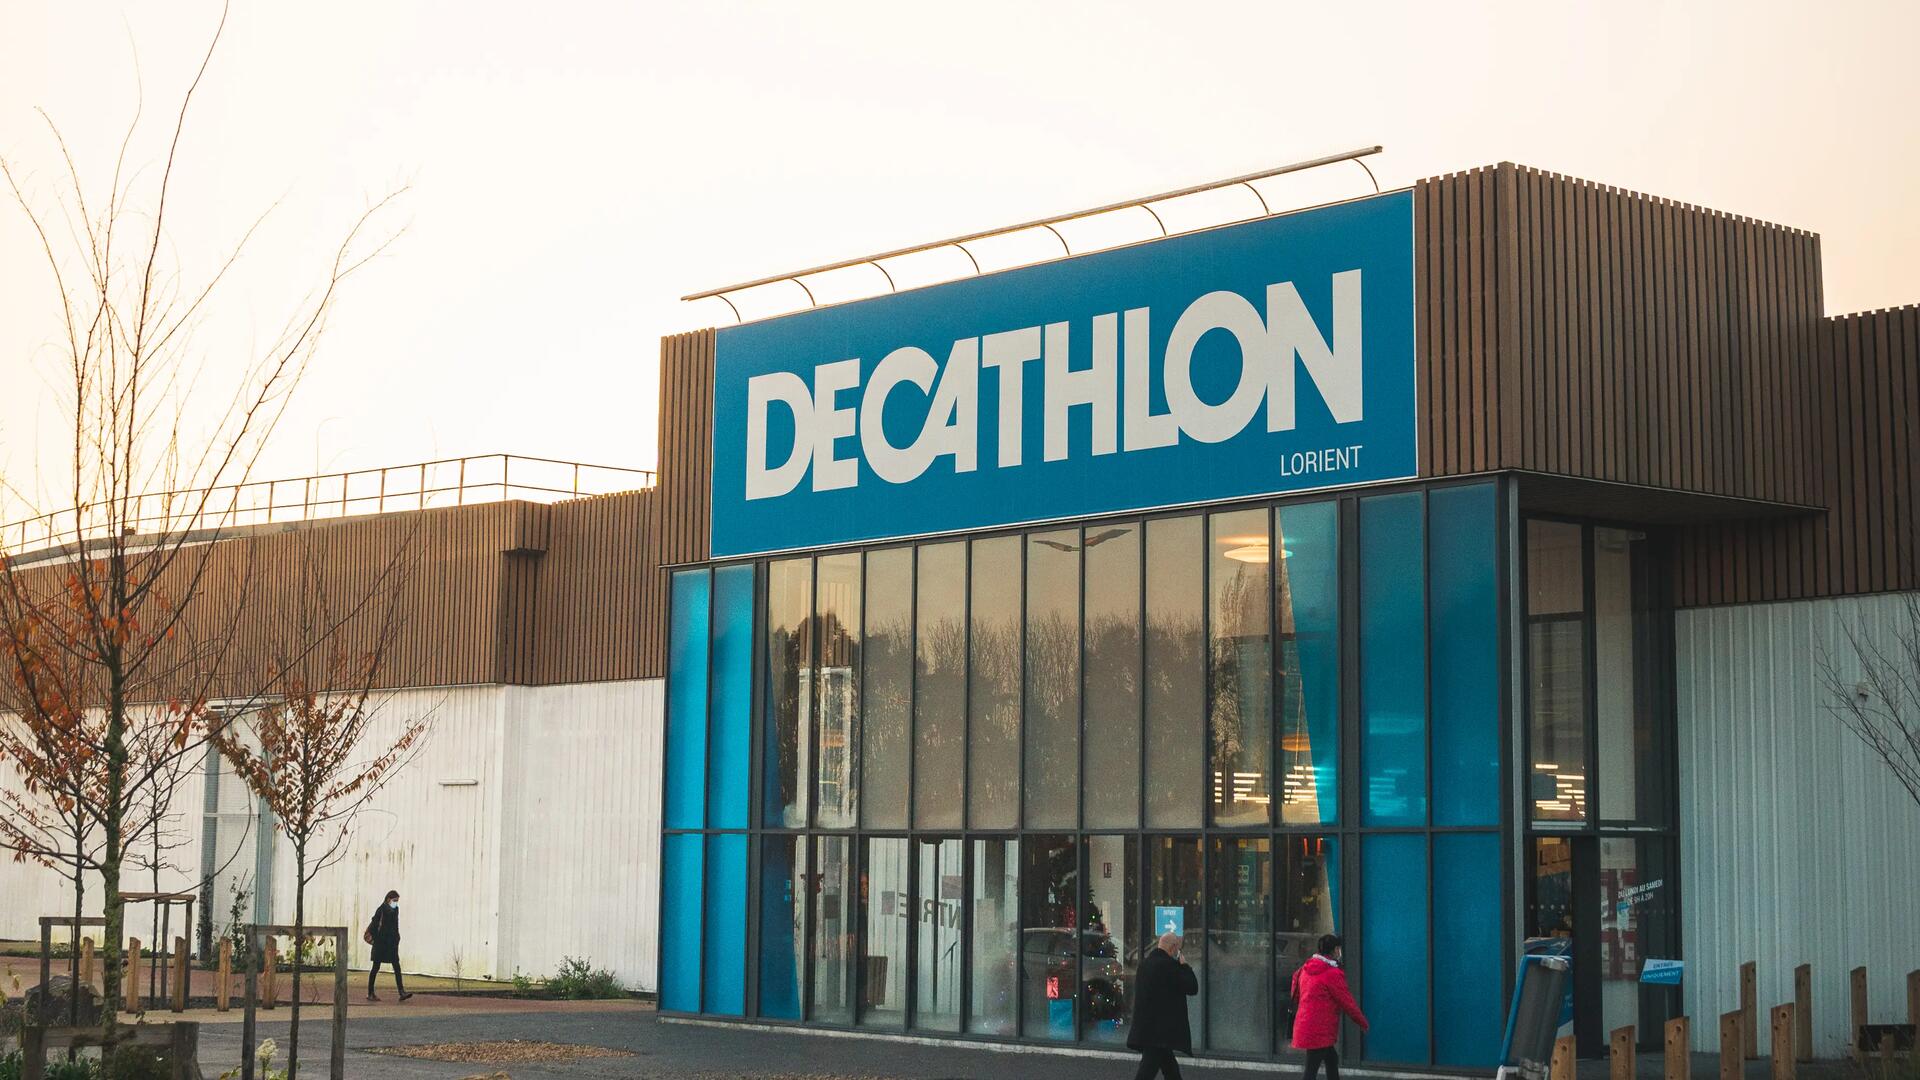 Picture Decathlon store Lorient city